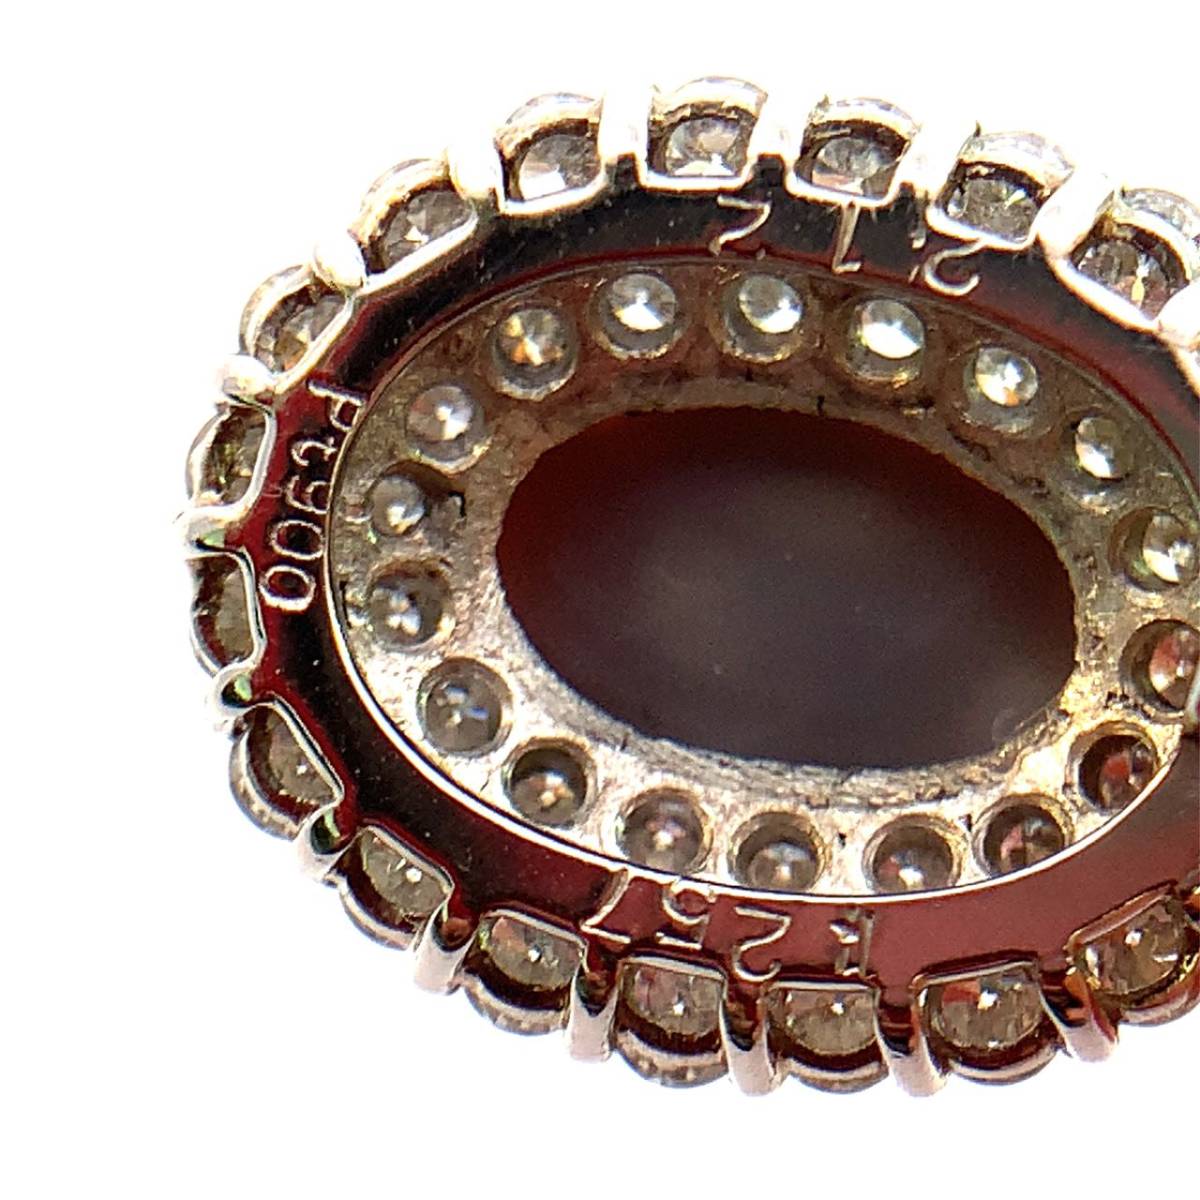 2.12 carat black opal бриллиантовое колье подвеска с цепью платина PT850 / 900 ~45cm